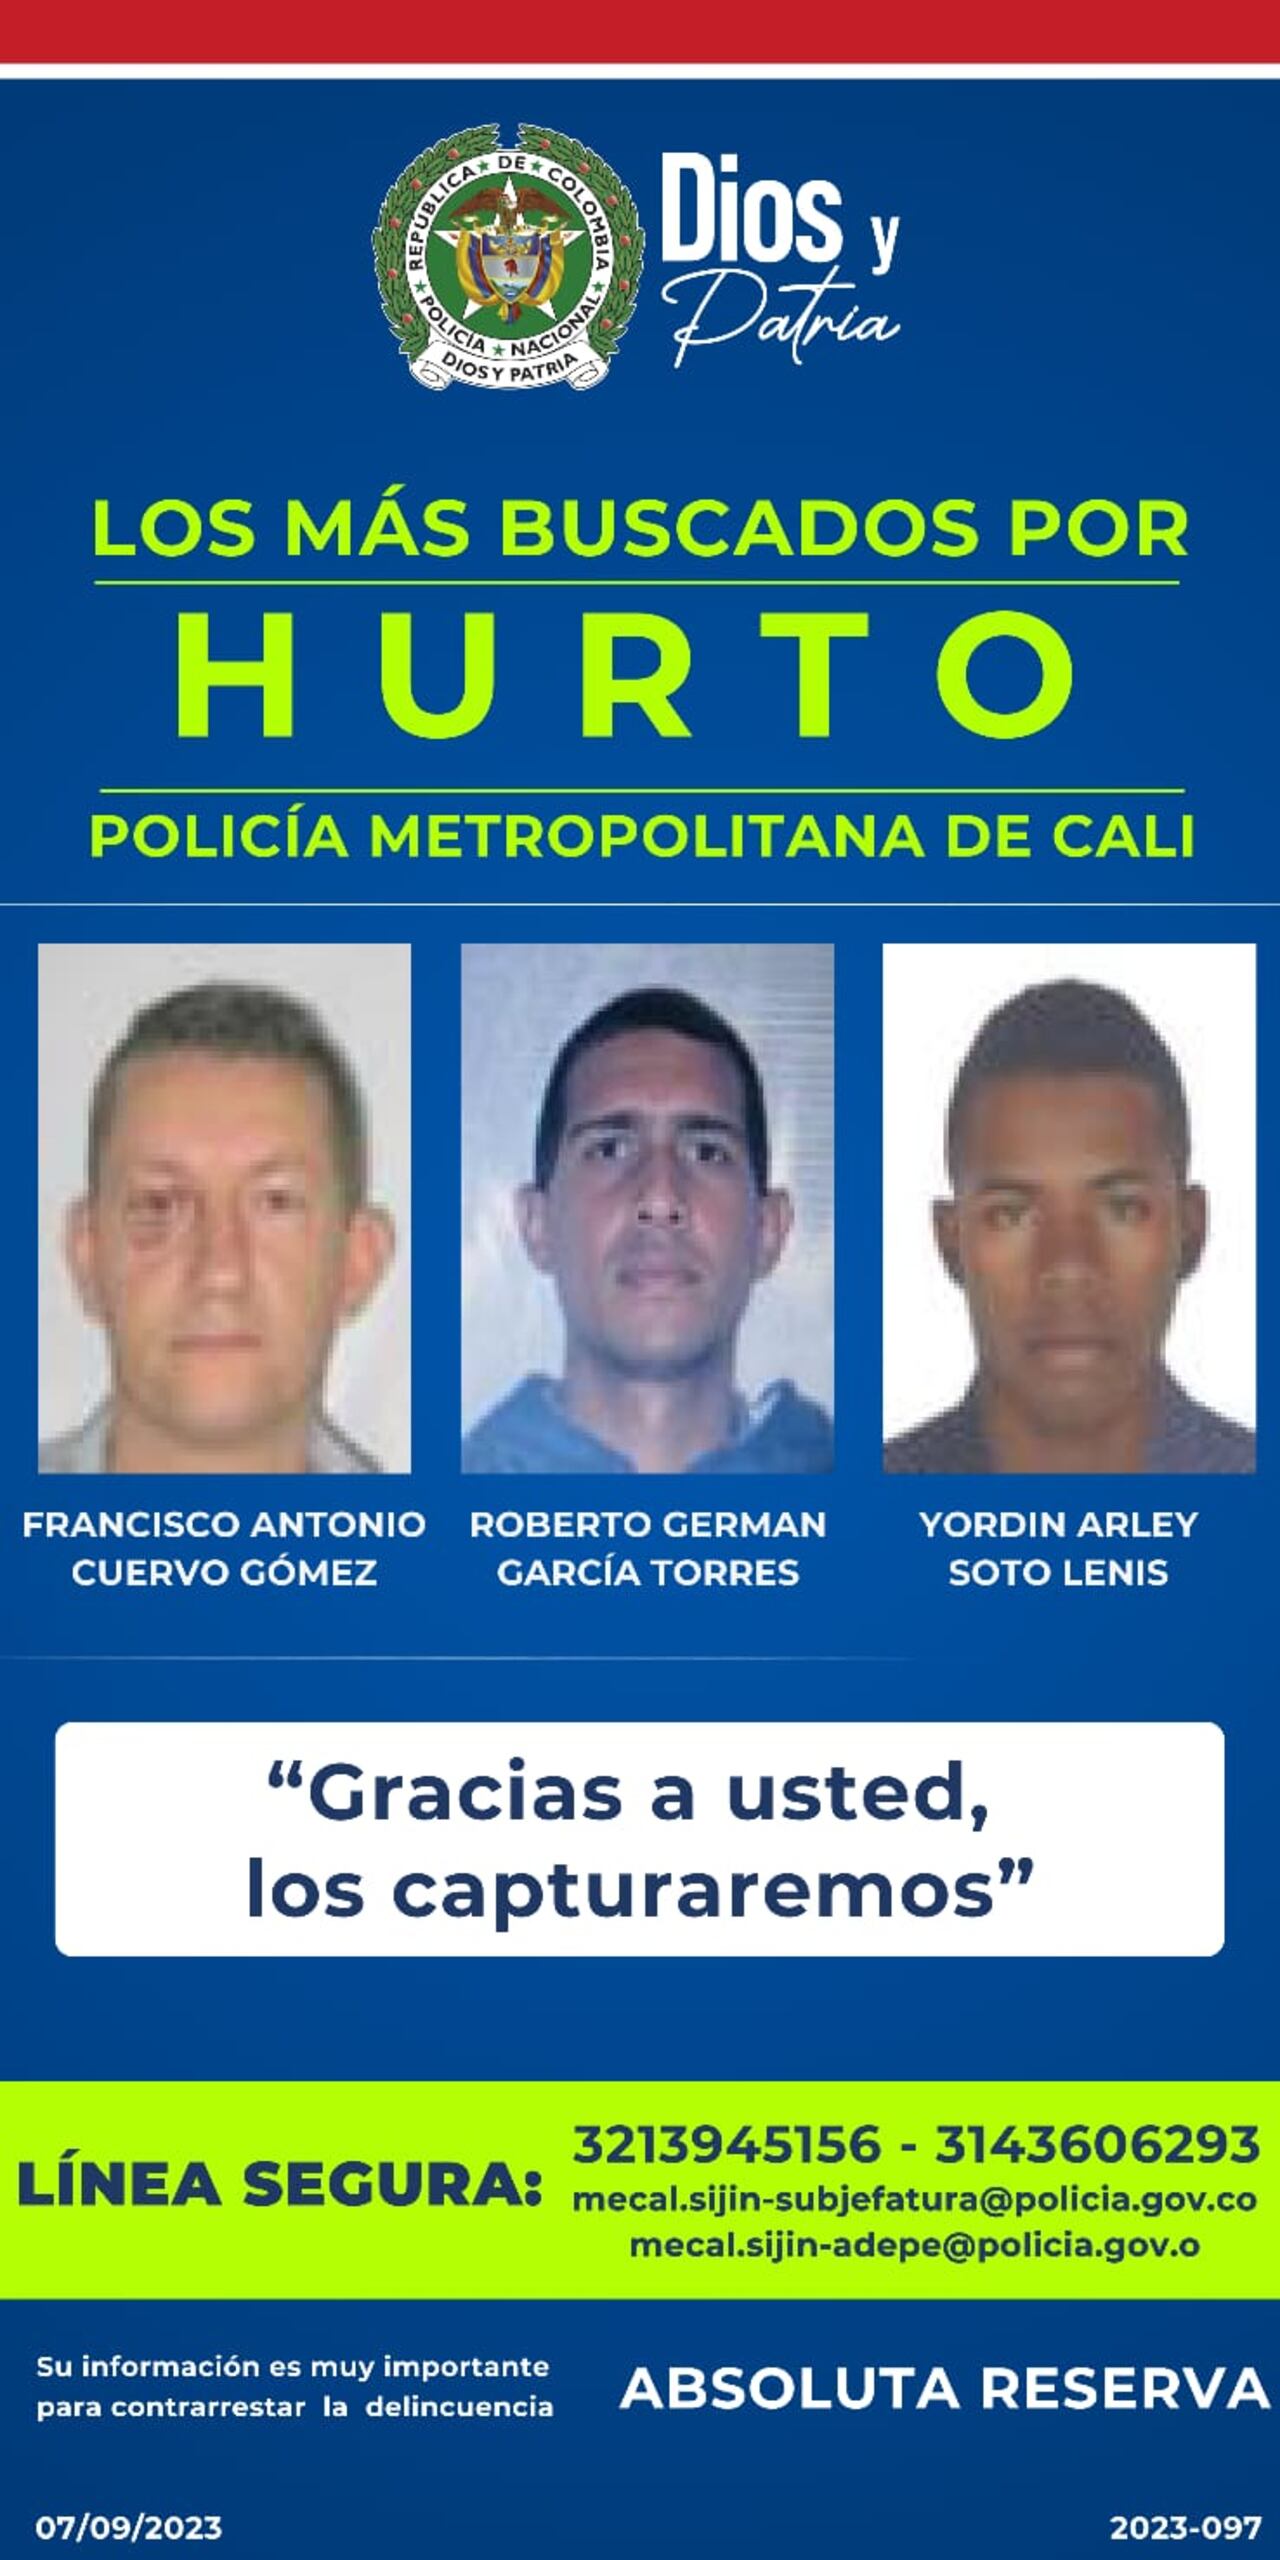 Estos son los rostros de los más buscados por homicidio y hurto en Cali.